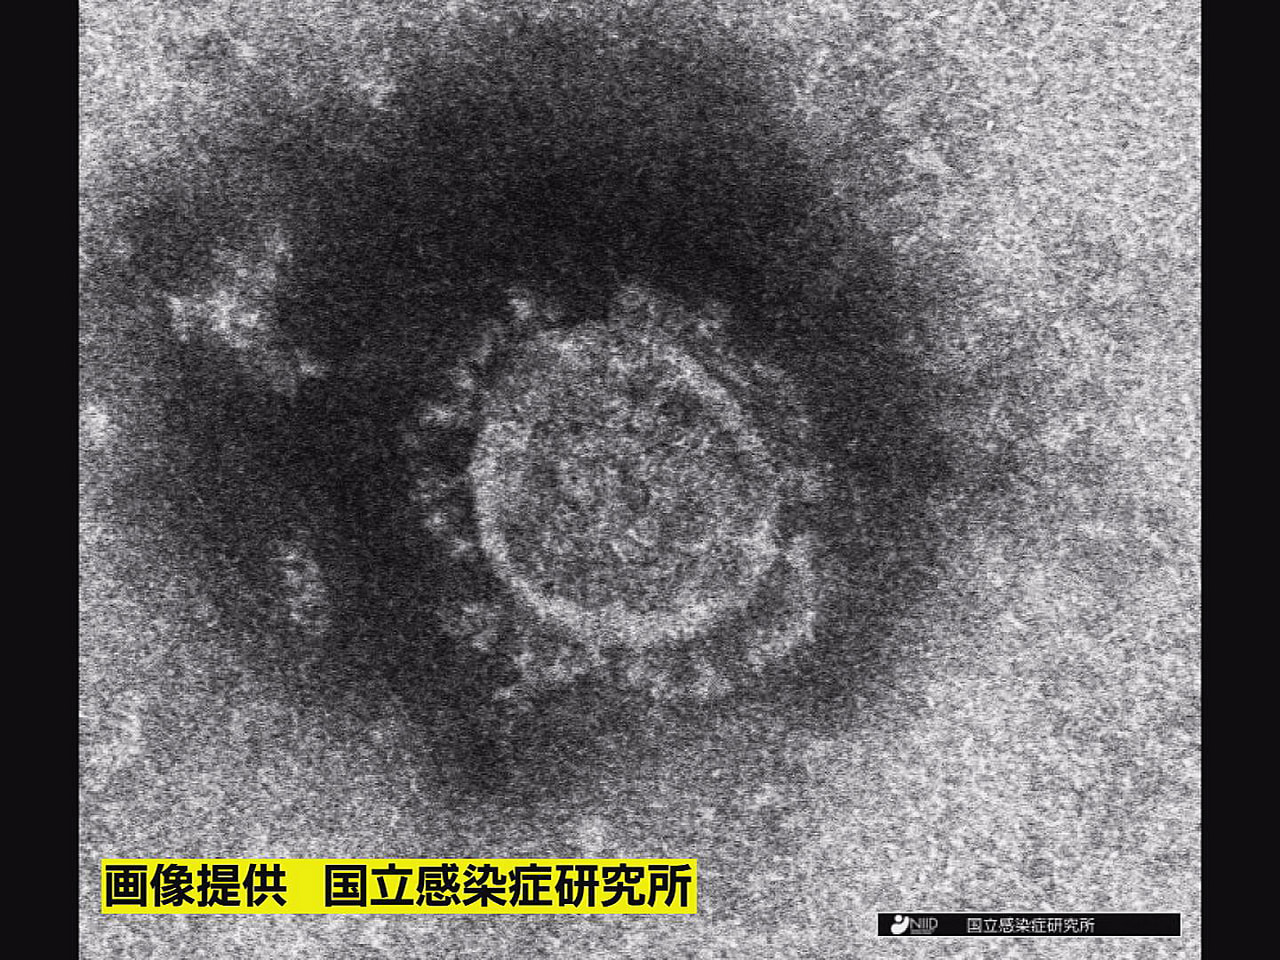 岐阜県は１５日、新型コロナウイルス感染者が６３６人確認されたと発表しました。 新...